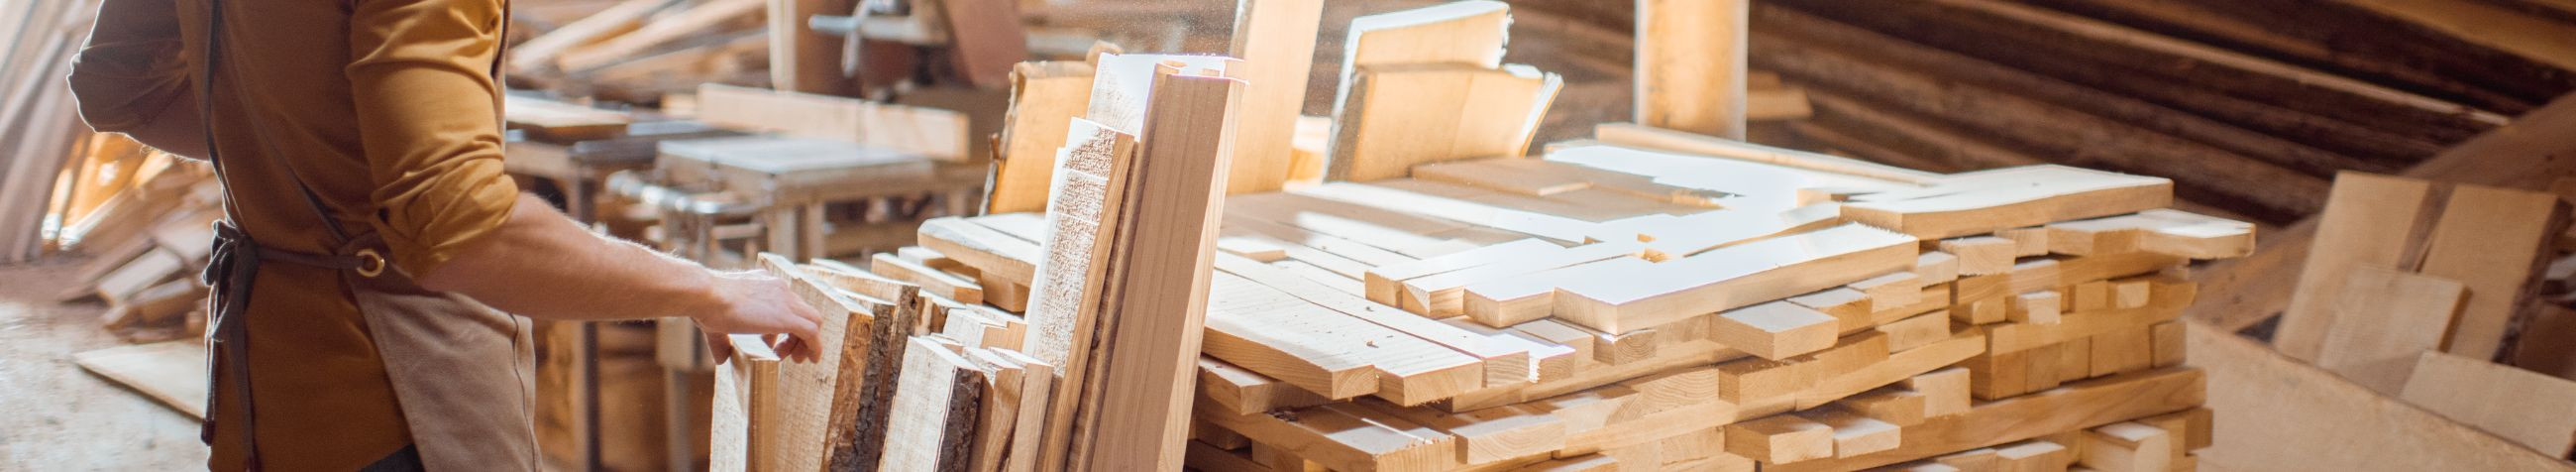 Me pakume kõrgekvaliteedilisi mööblit, mis on valmistatud põhjalikult valitud puidust ja materjalidest. Töömeisterlikkus ja pühendumus võimaldab meil toota täiuslikke ja kvaliteetseid tisleritooteid.